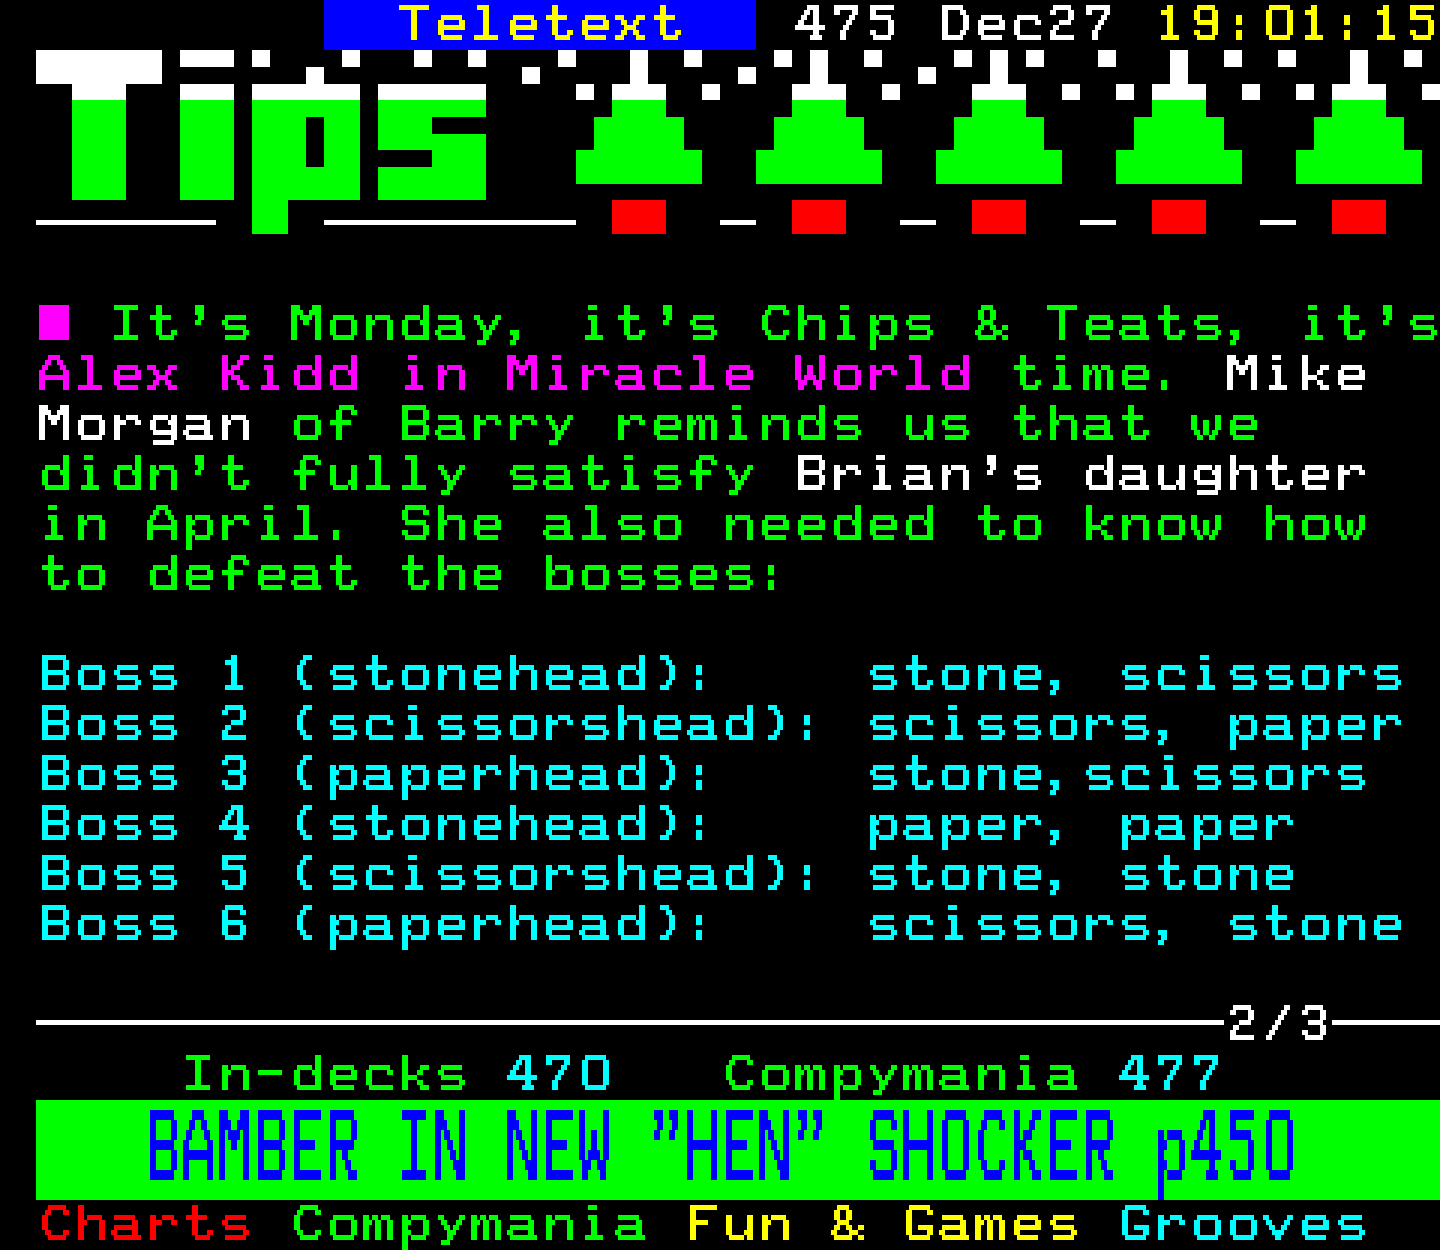 Digitiser, Teletext - 1993